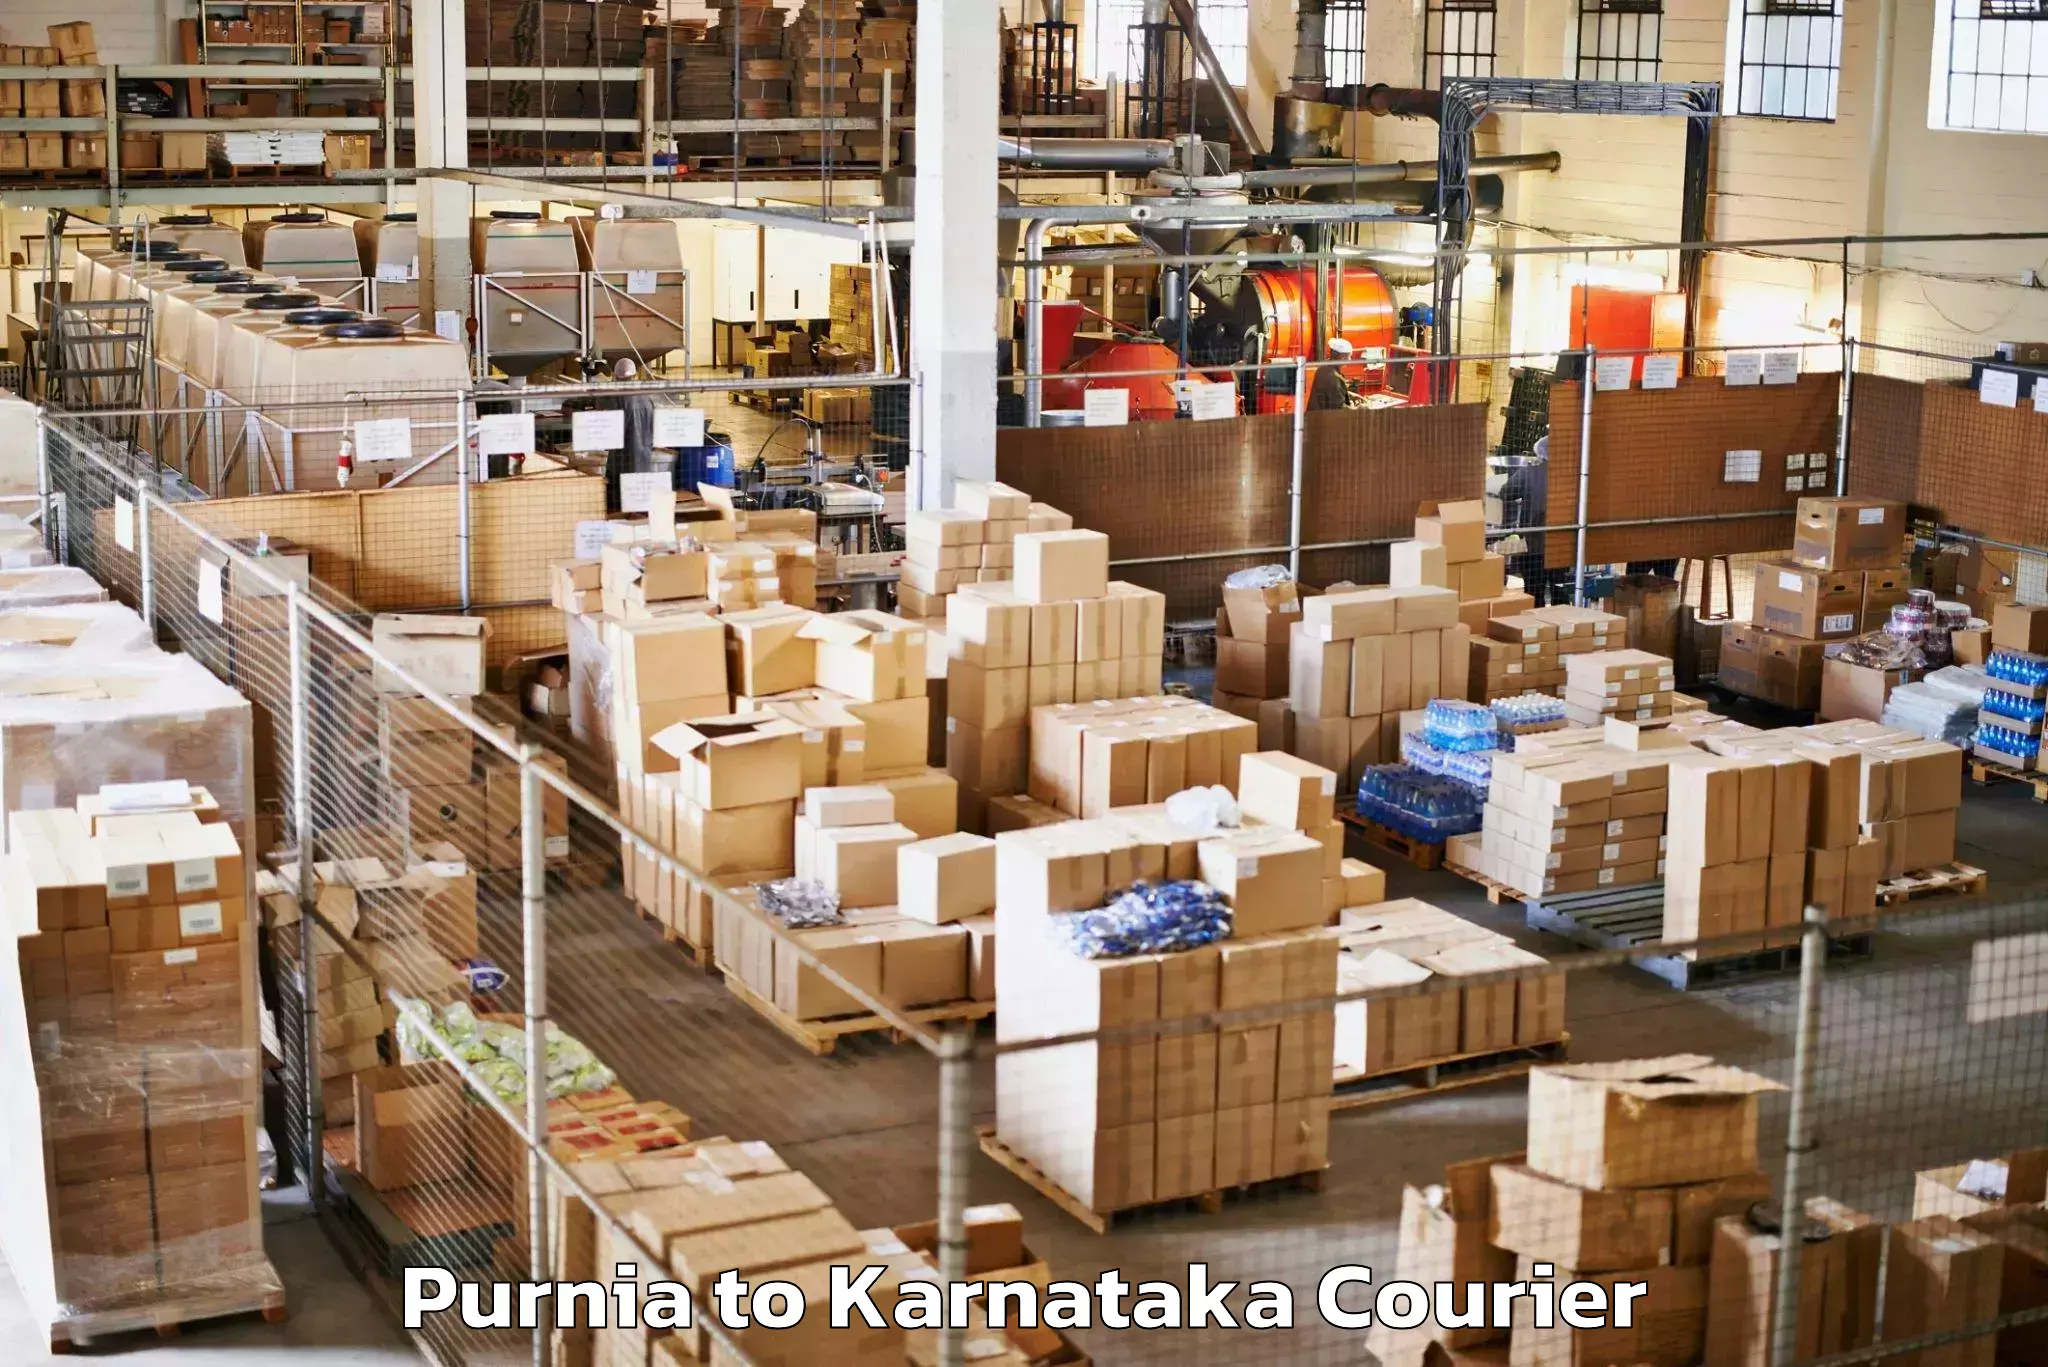 Reliable baggage delivery Purnia to Karnataka